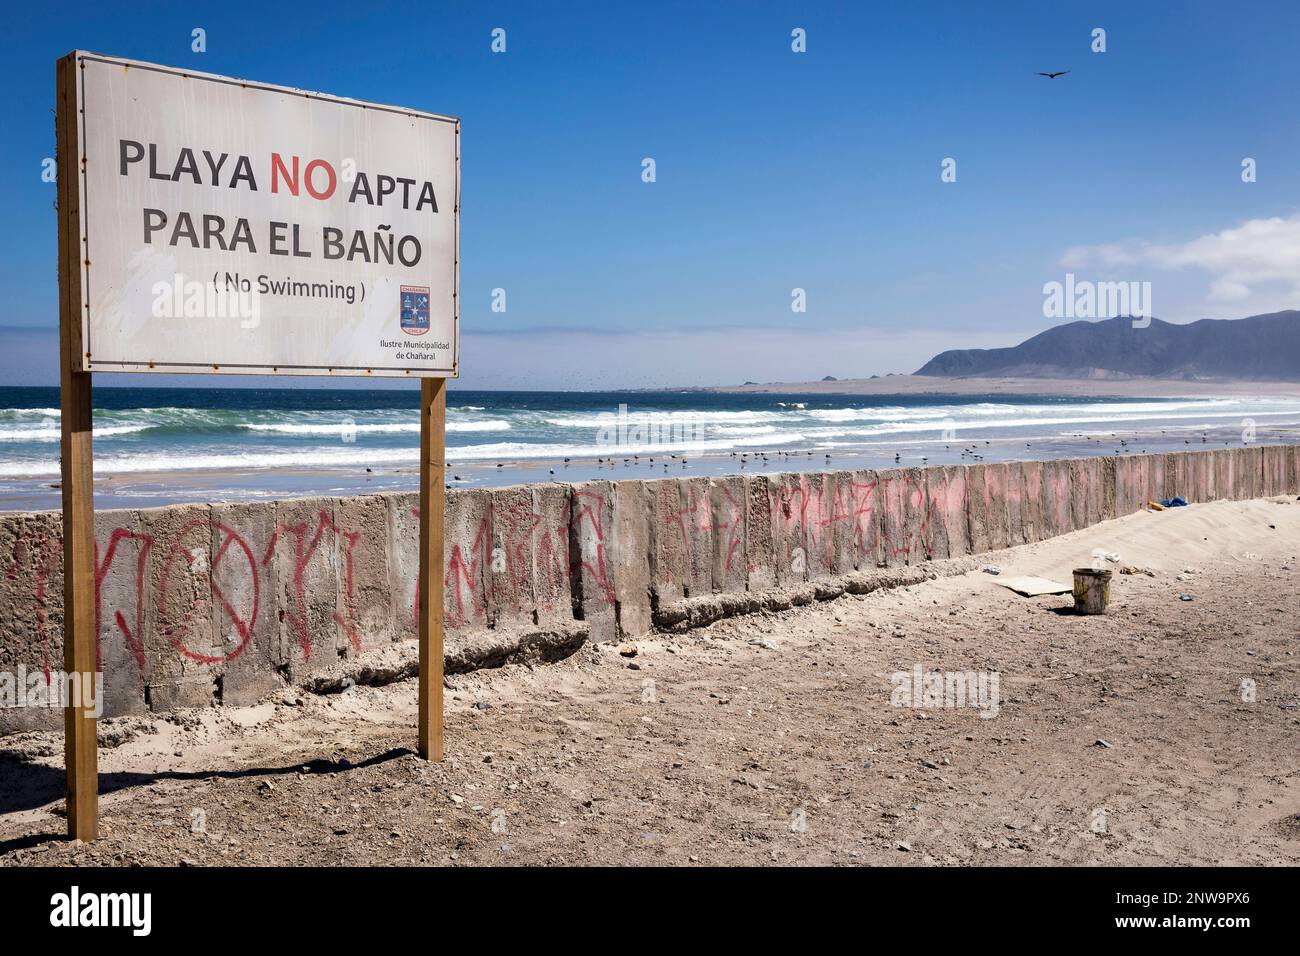 Spiaggia inquinata contaminata a Chañaral Cile con il cartello in spagnolo che recita "Spiaggia non adatta per nuotare" (Playa No Apta Para El Baño) Foto Stock